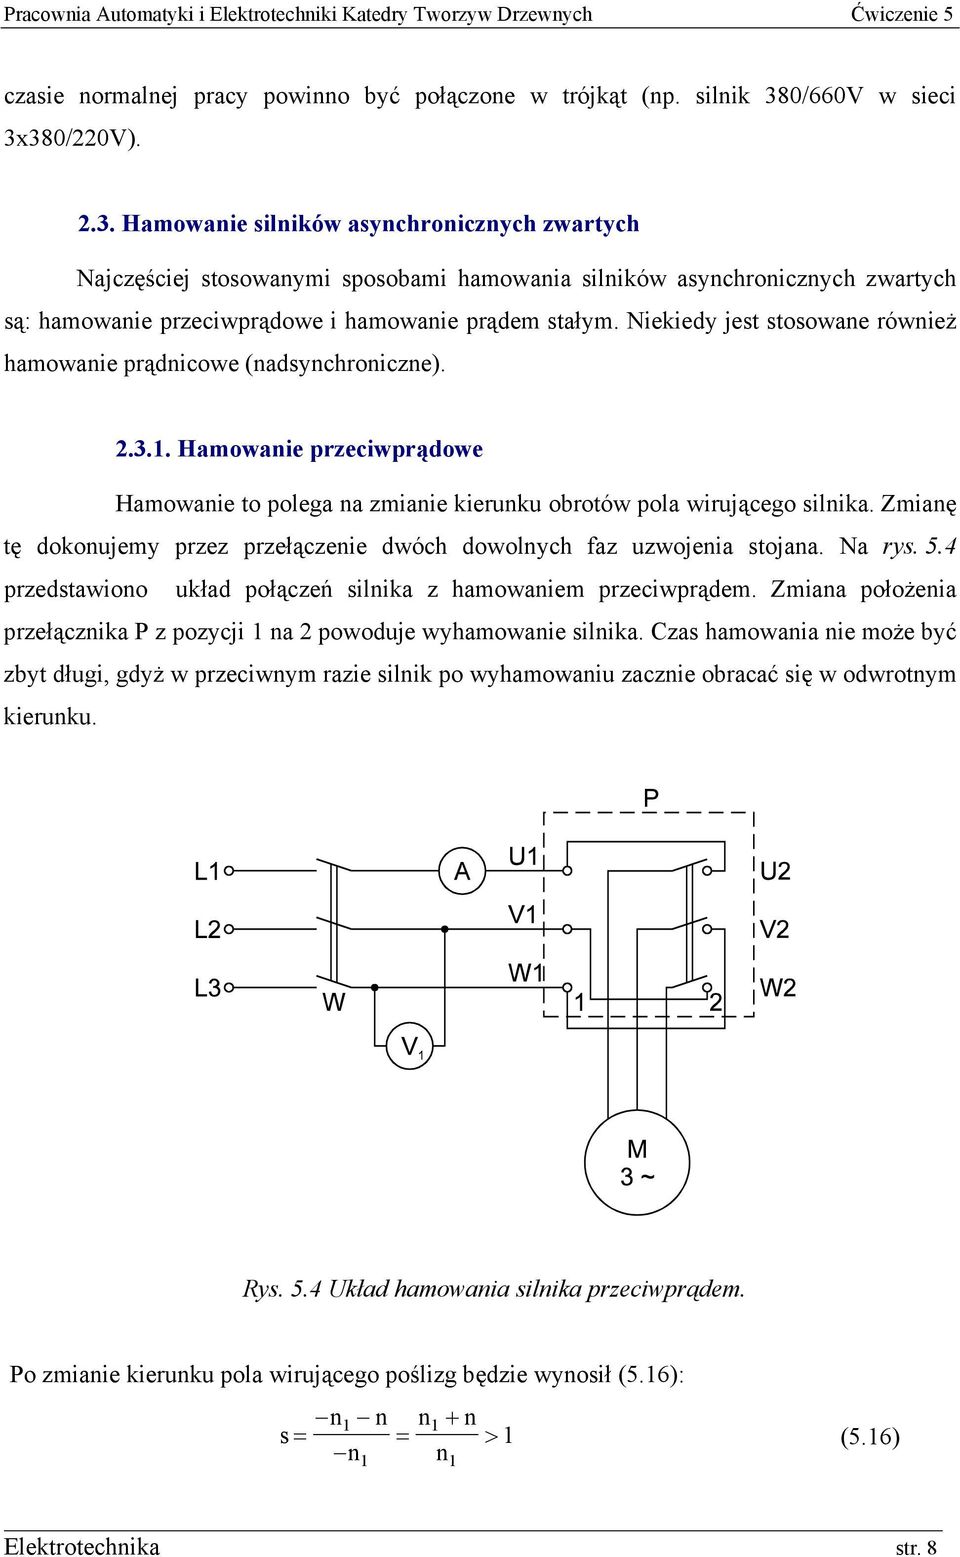 Niekiedy jest stosowane również hamowanie prądnicowe (nadsynchroniczne). 2.3.1. Hamowanie przeciwprądowe Hamowanie to polega na zmianie kierunku obrotów pola wirującego silnika.